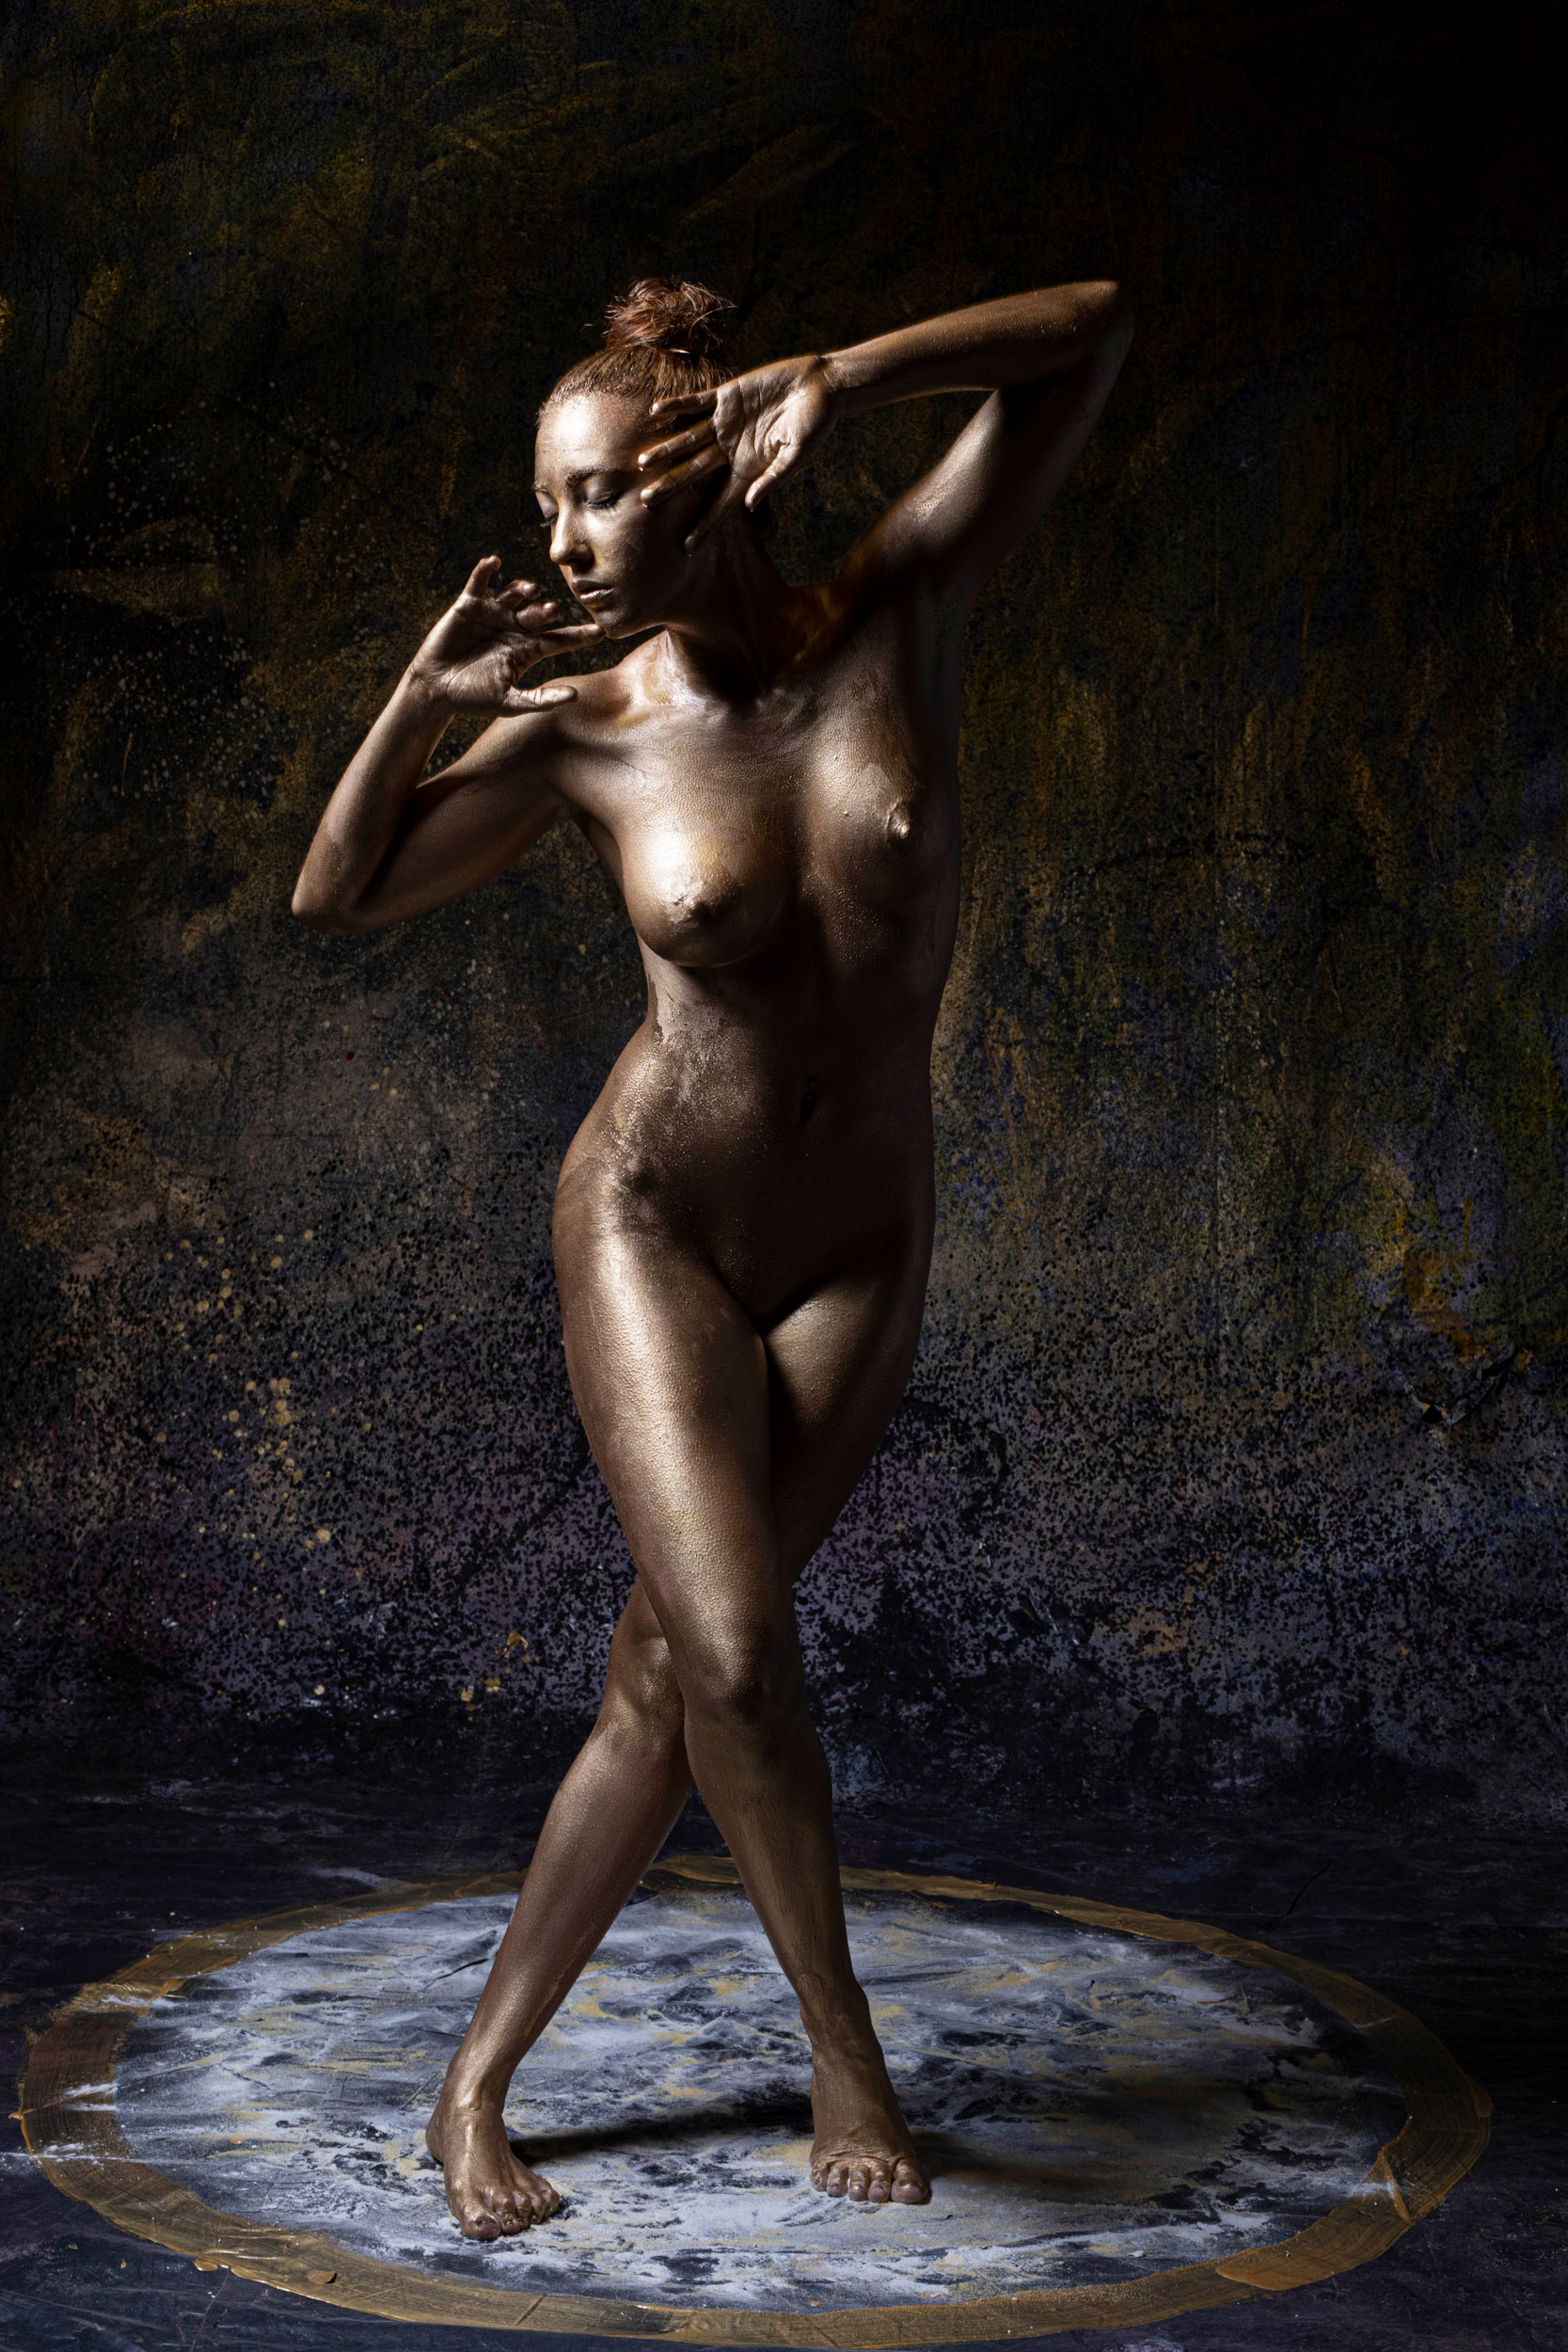 Categorie: Glamour, Fine Art, Boudoir & Artistic Nude - Ph: Elio Turco - MEM Studios, Pavia di Udine, Italia